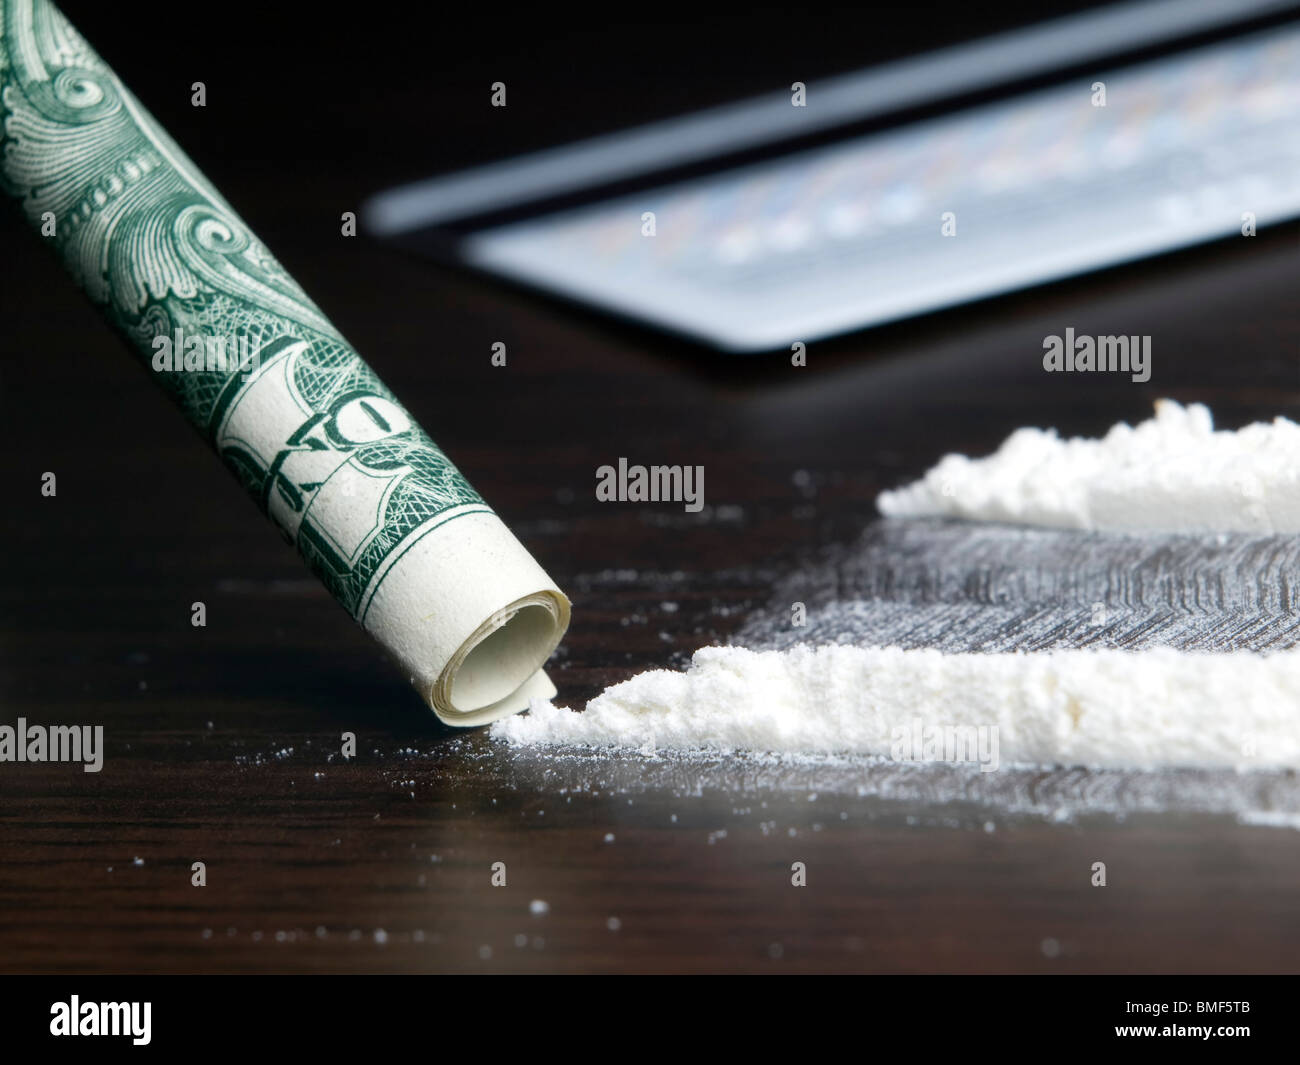 Uno sguardo più da vicino a una cattiva abitudine e dipendenza da droghe come la cocaina... Foto Stock